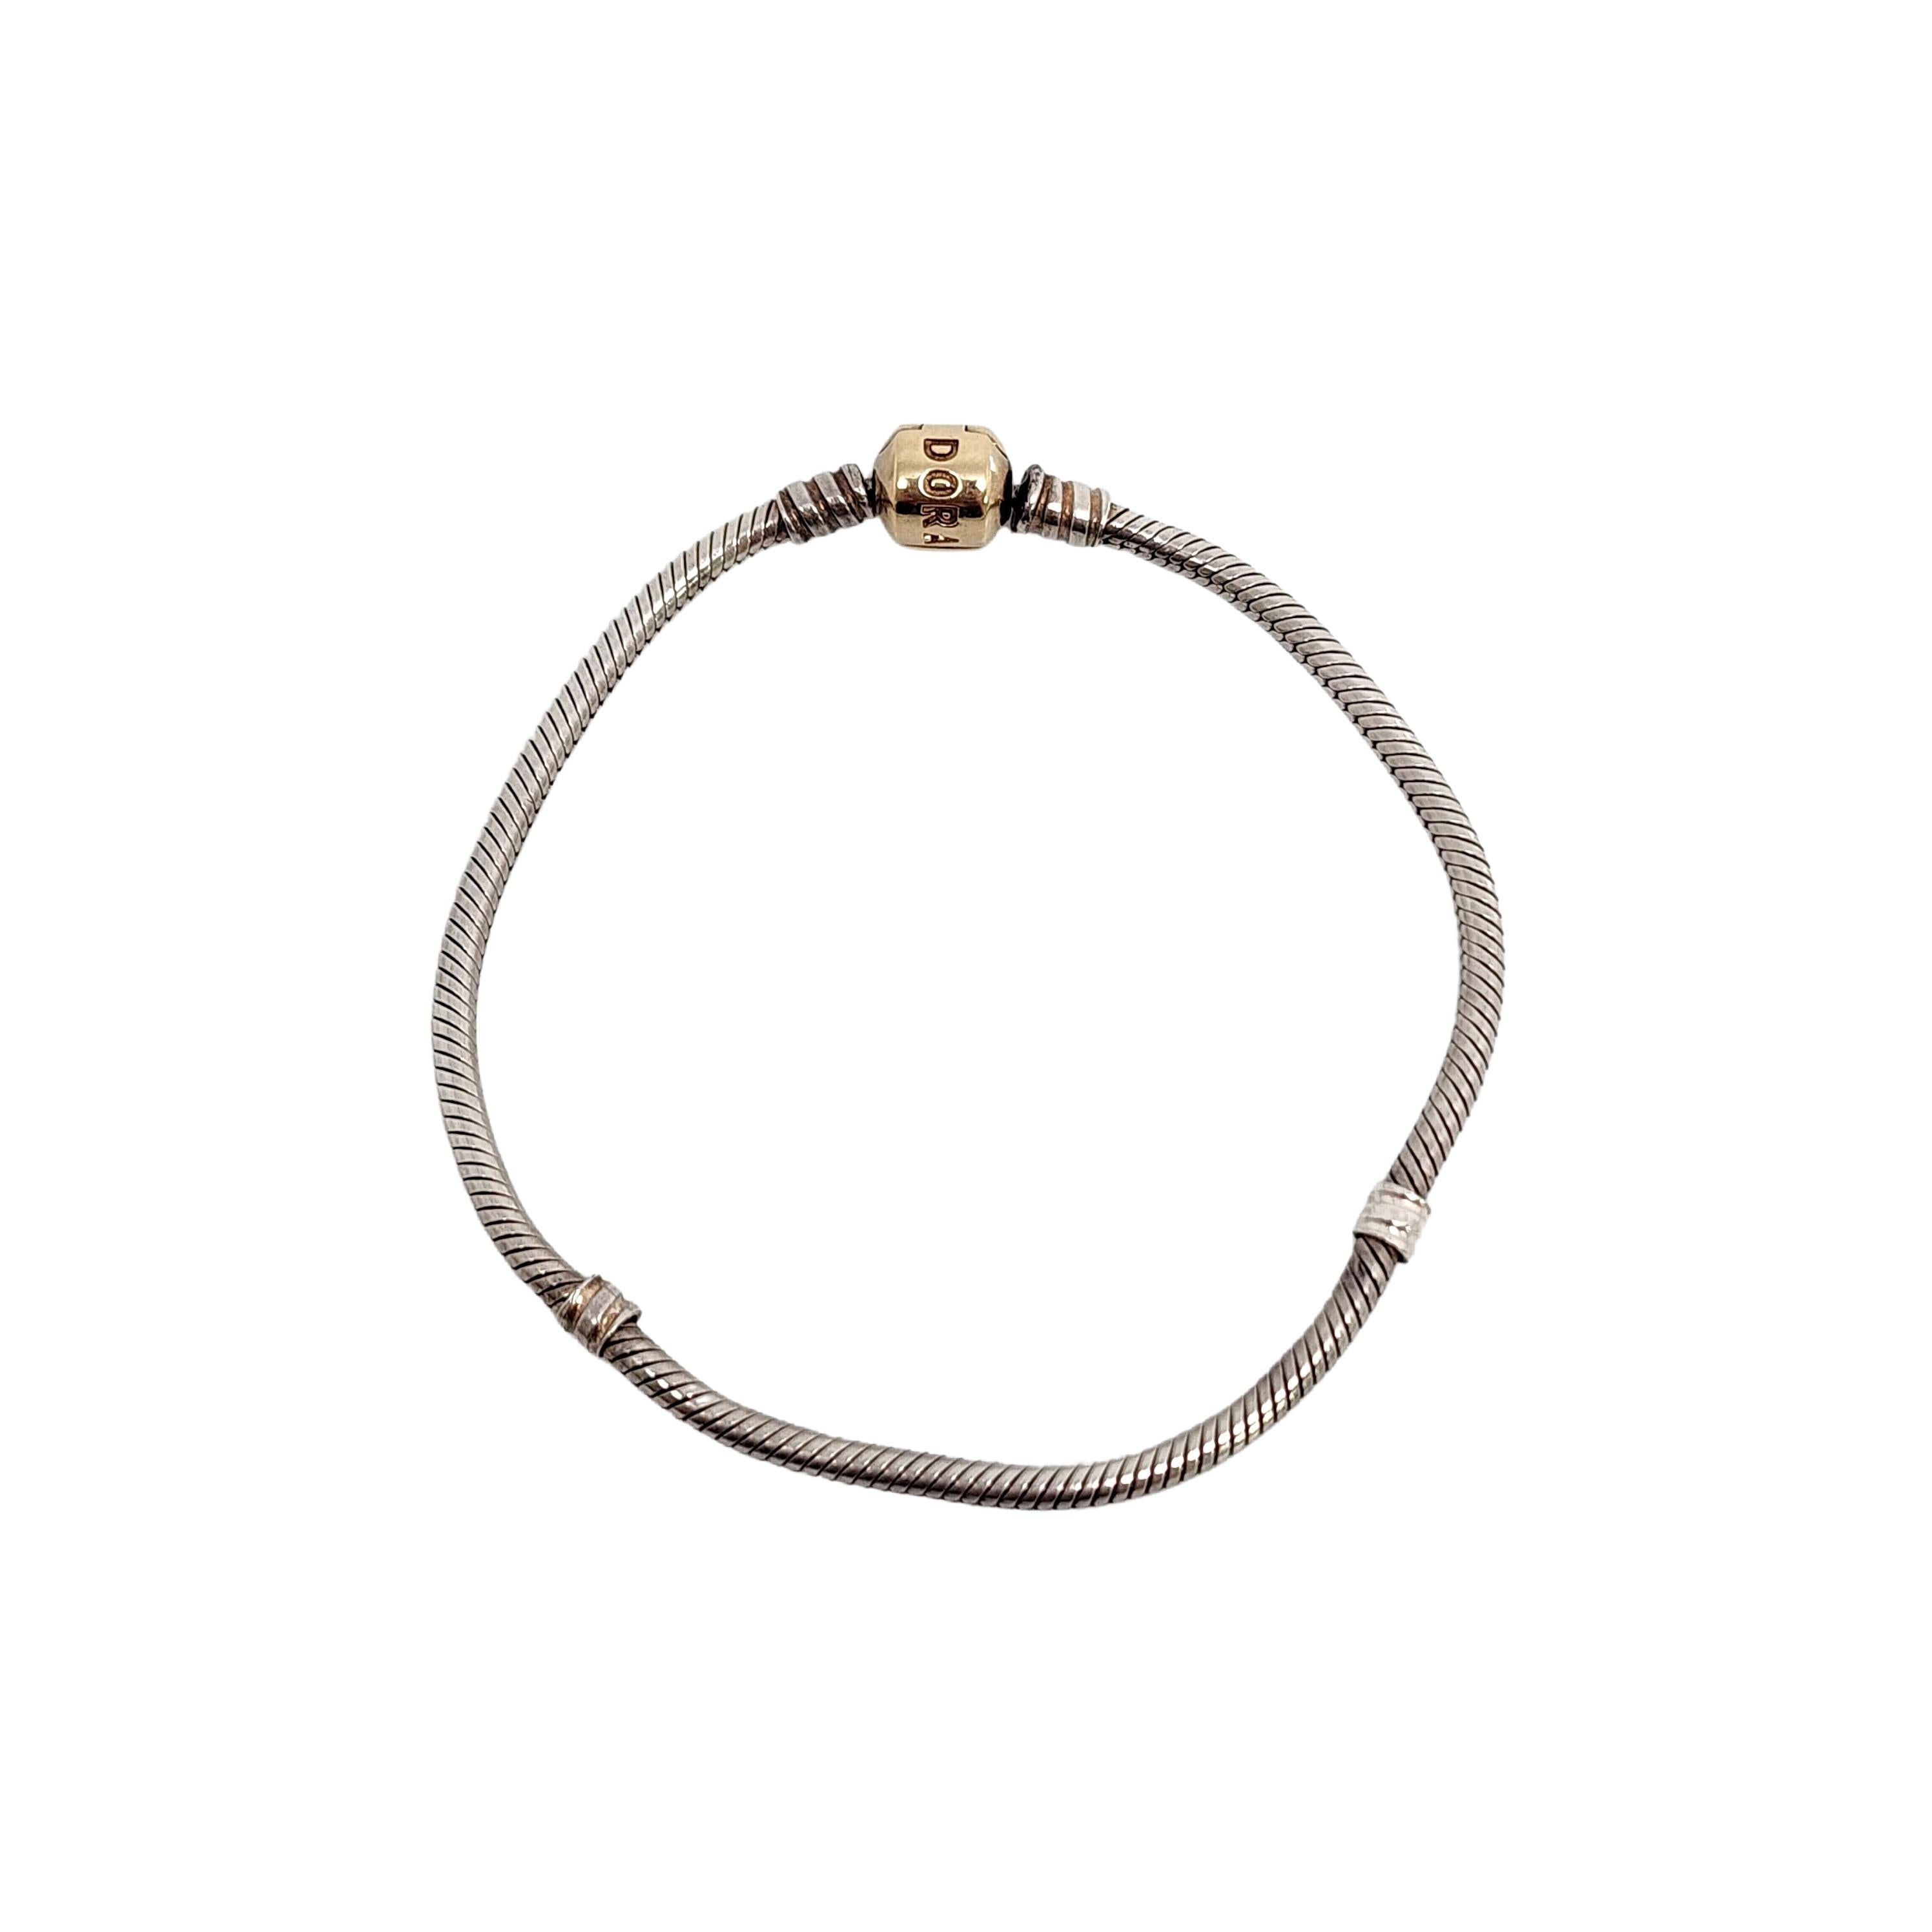 Authentique bracelet à chaîne serpent en argent sterling de Pandora avec fermoir à barillet en or jaune 14K.

#590702HG

Le bracelet à breloques classique de Pandora se compose d'une chaîne serpent et du fermoir à barillet emblématique de Pandora en